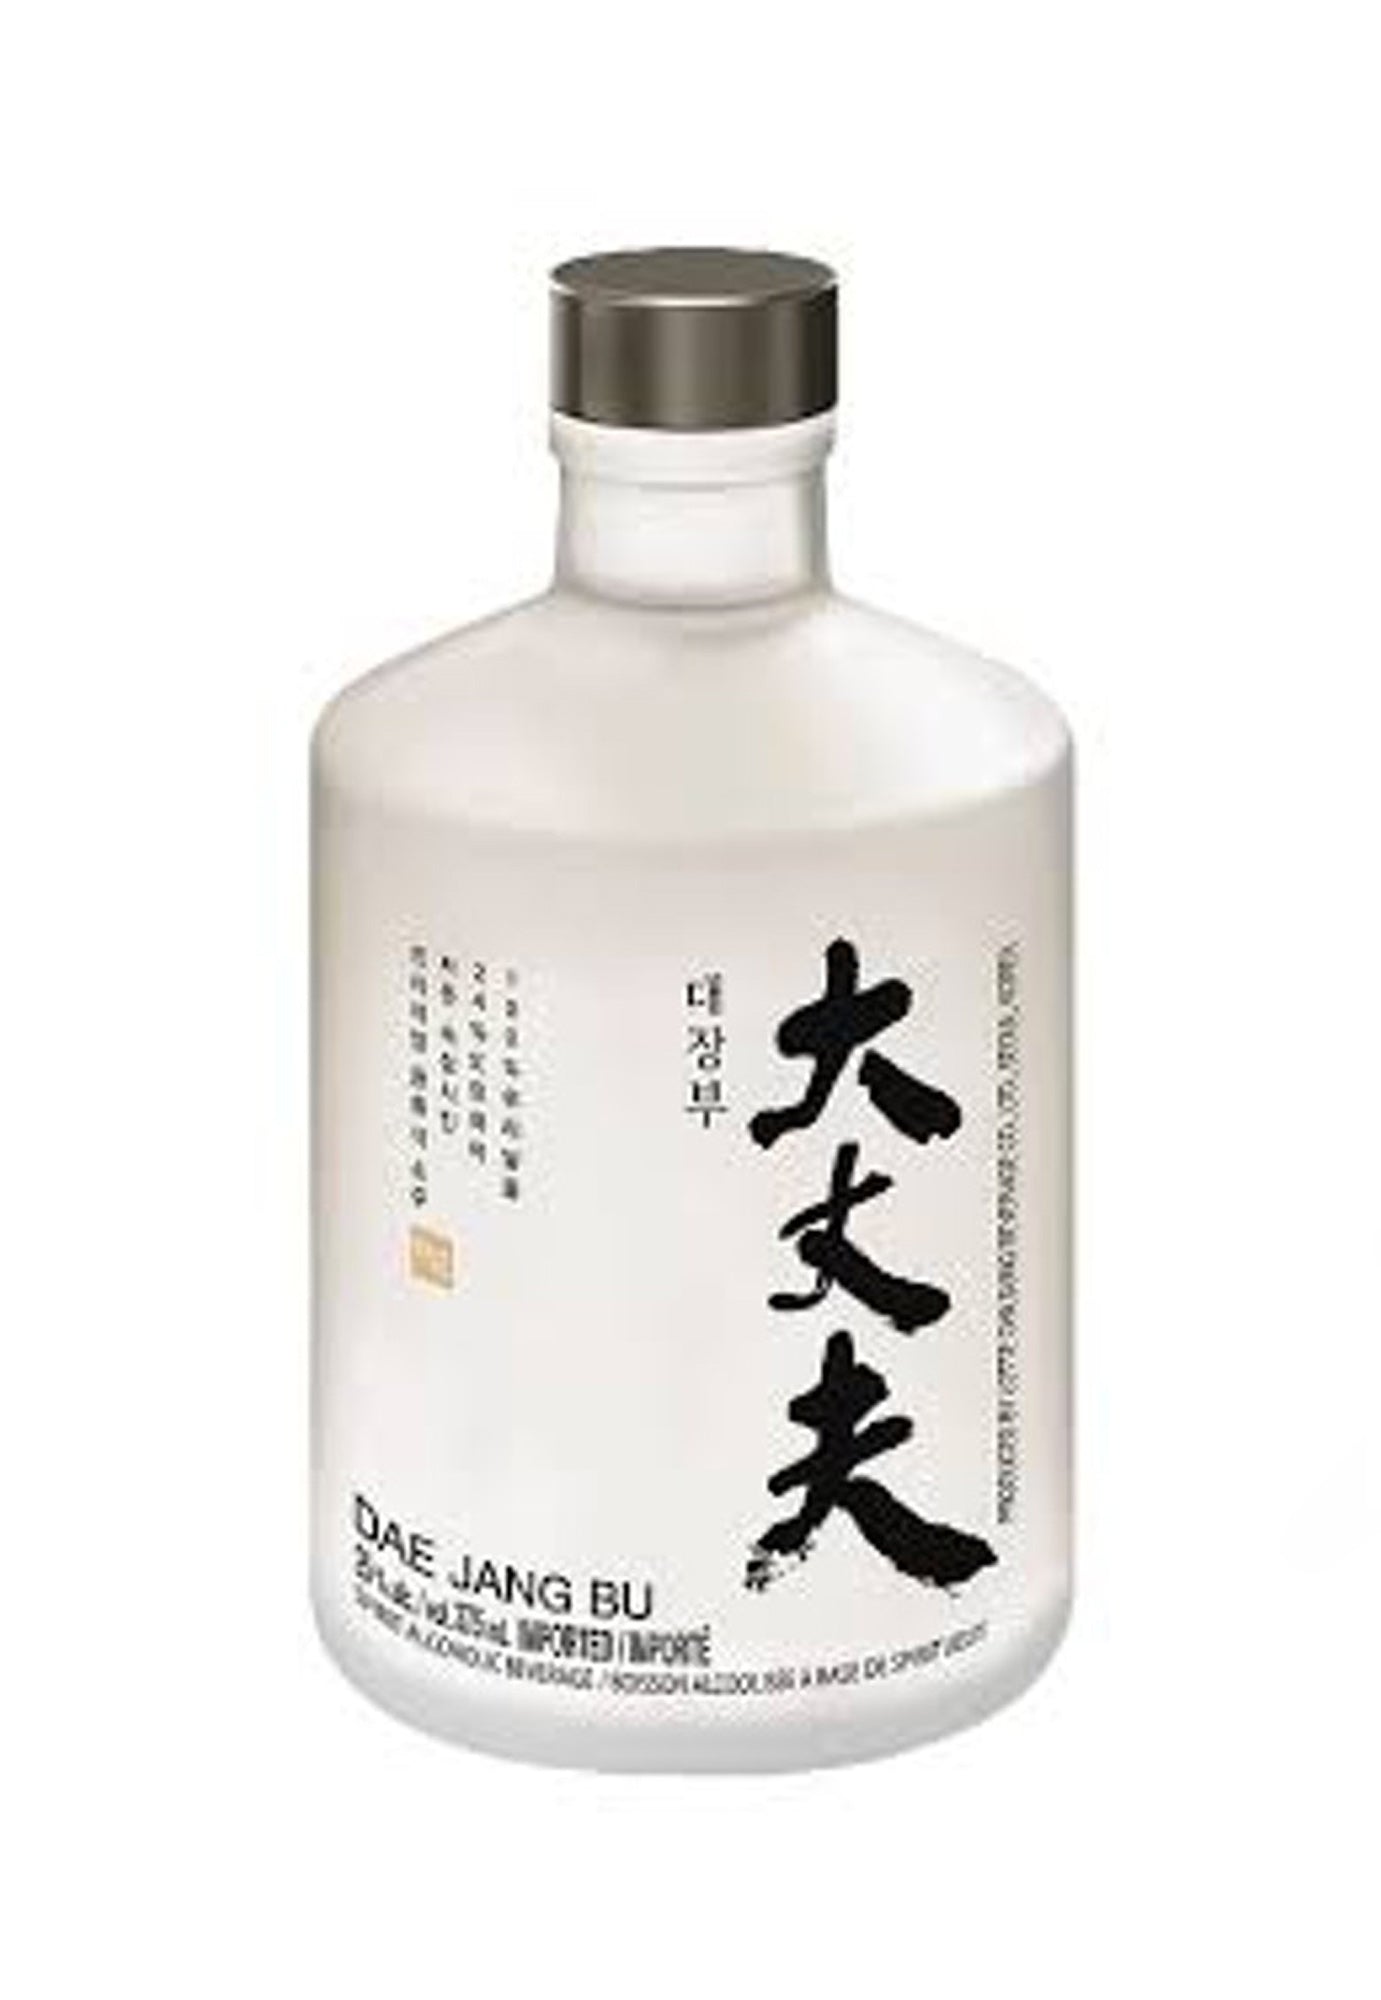 Dae Jang Bu 25 Soju - 375 ml